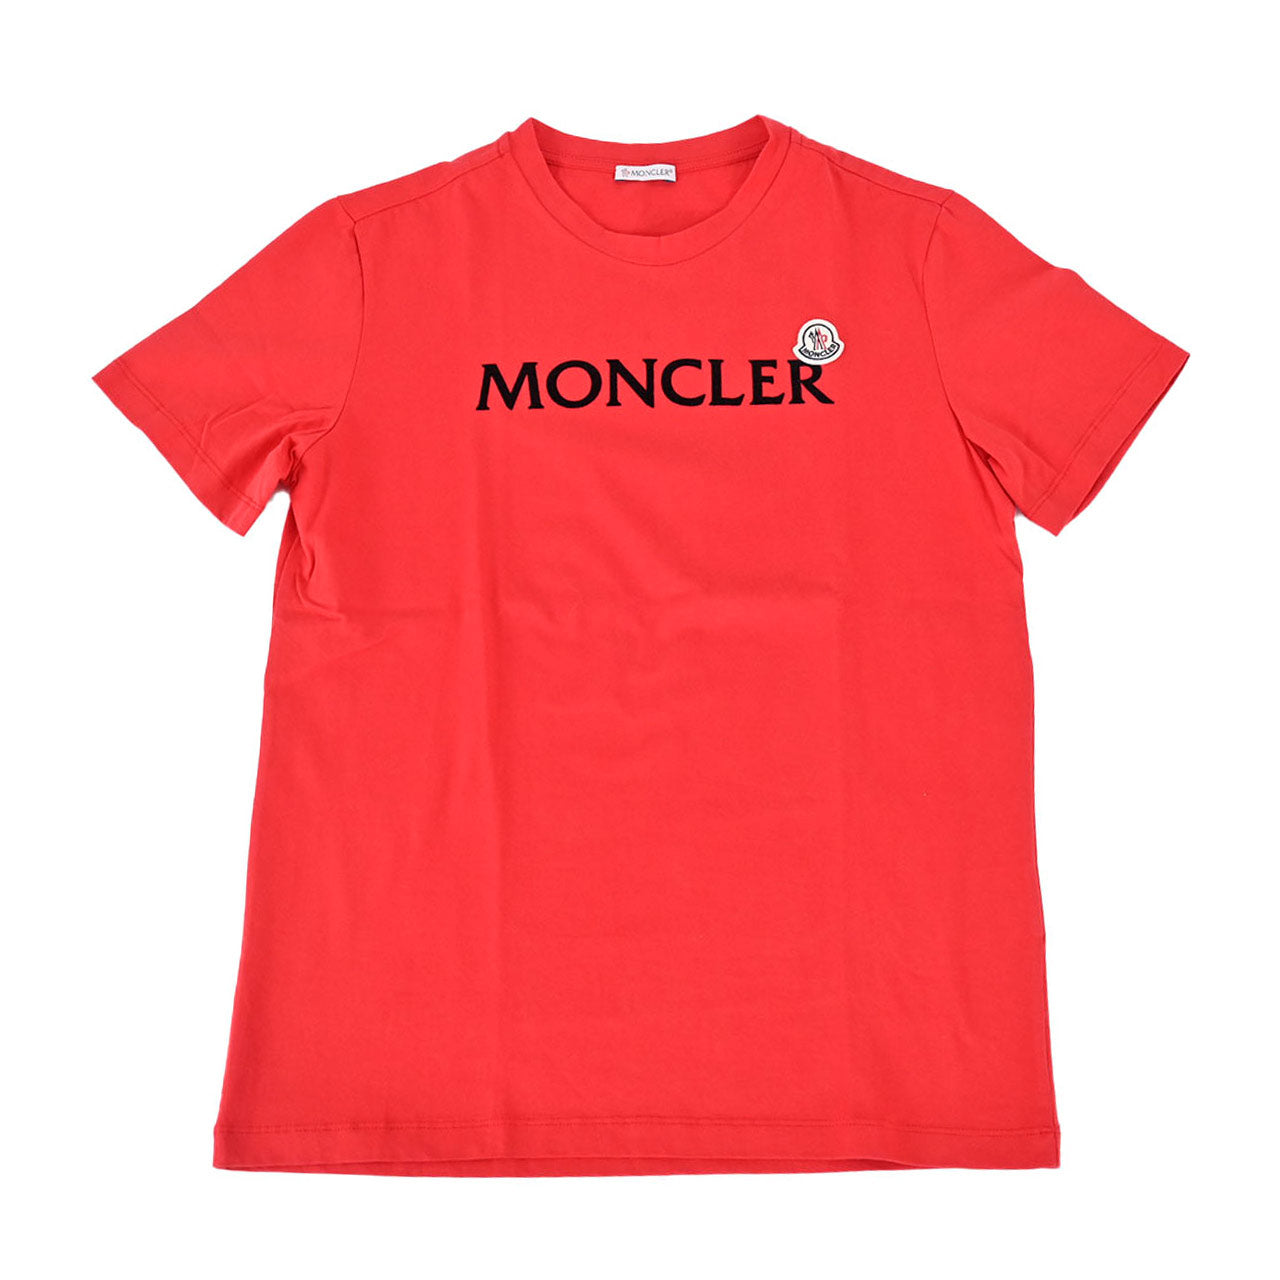 モンクレール MONCLER Tシャツ 8C000 22 8390T 544 レッド メンズ